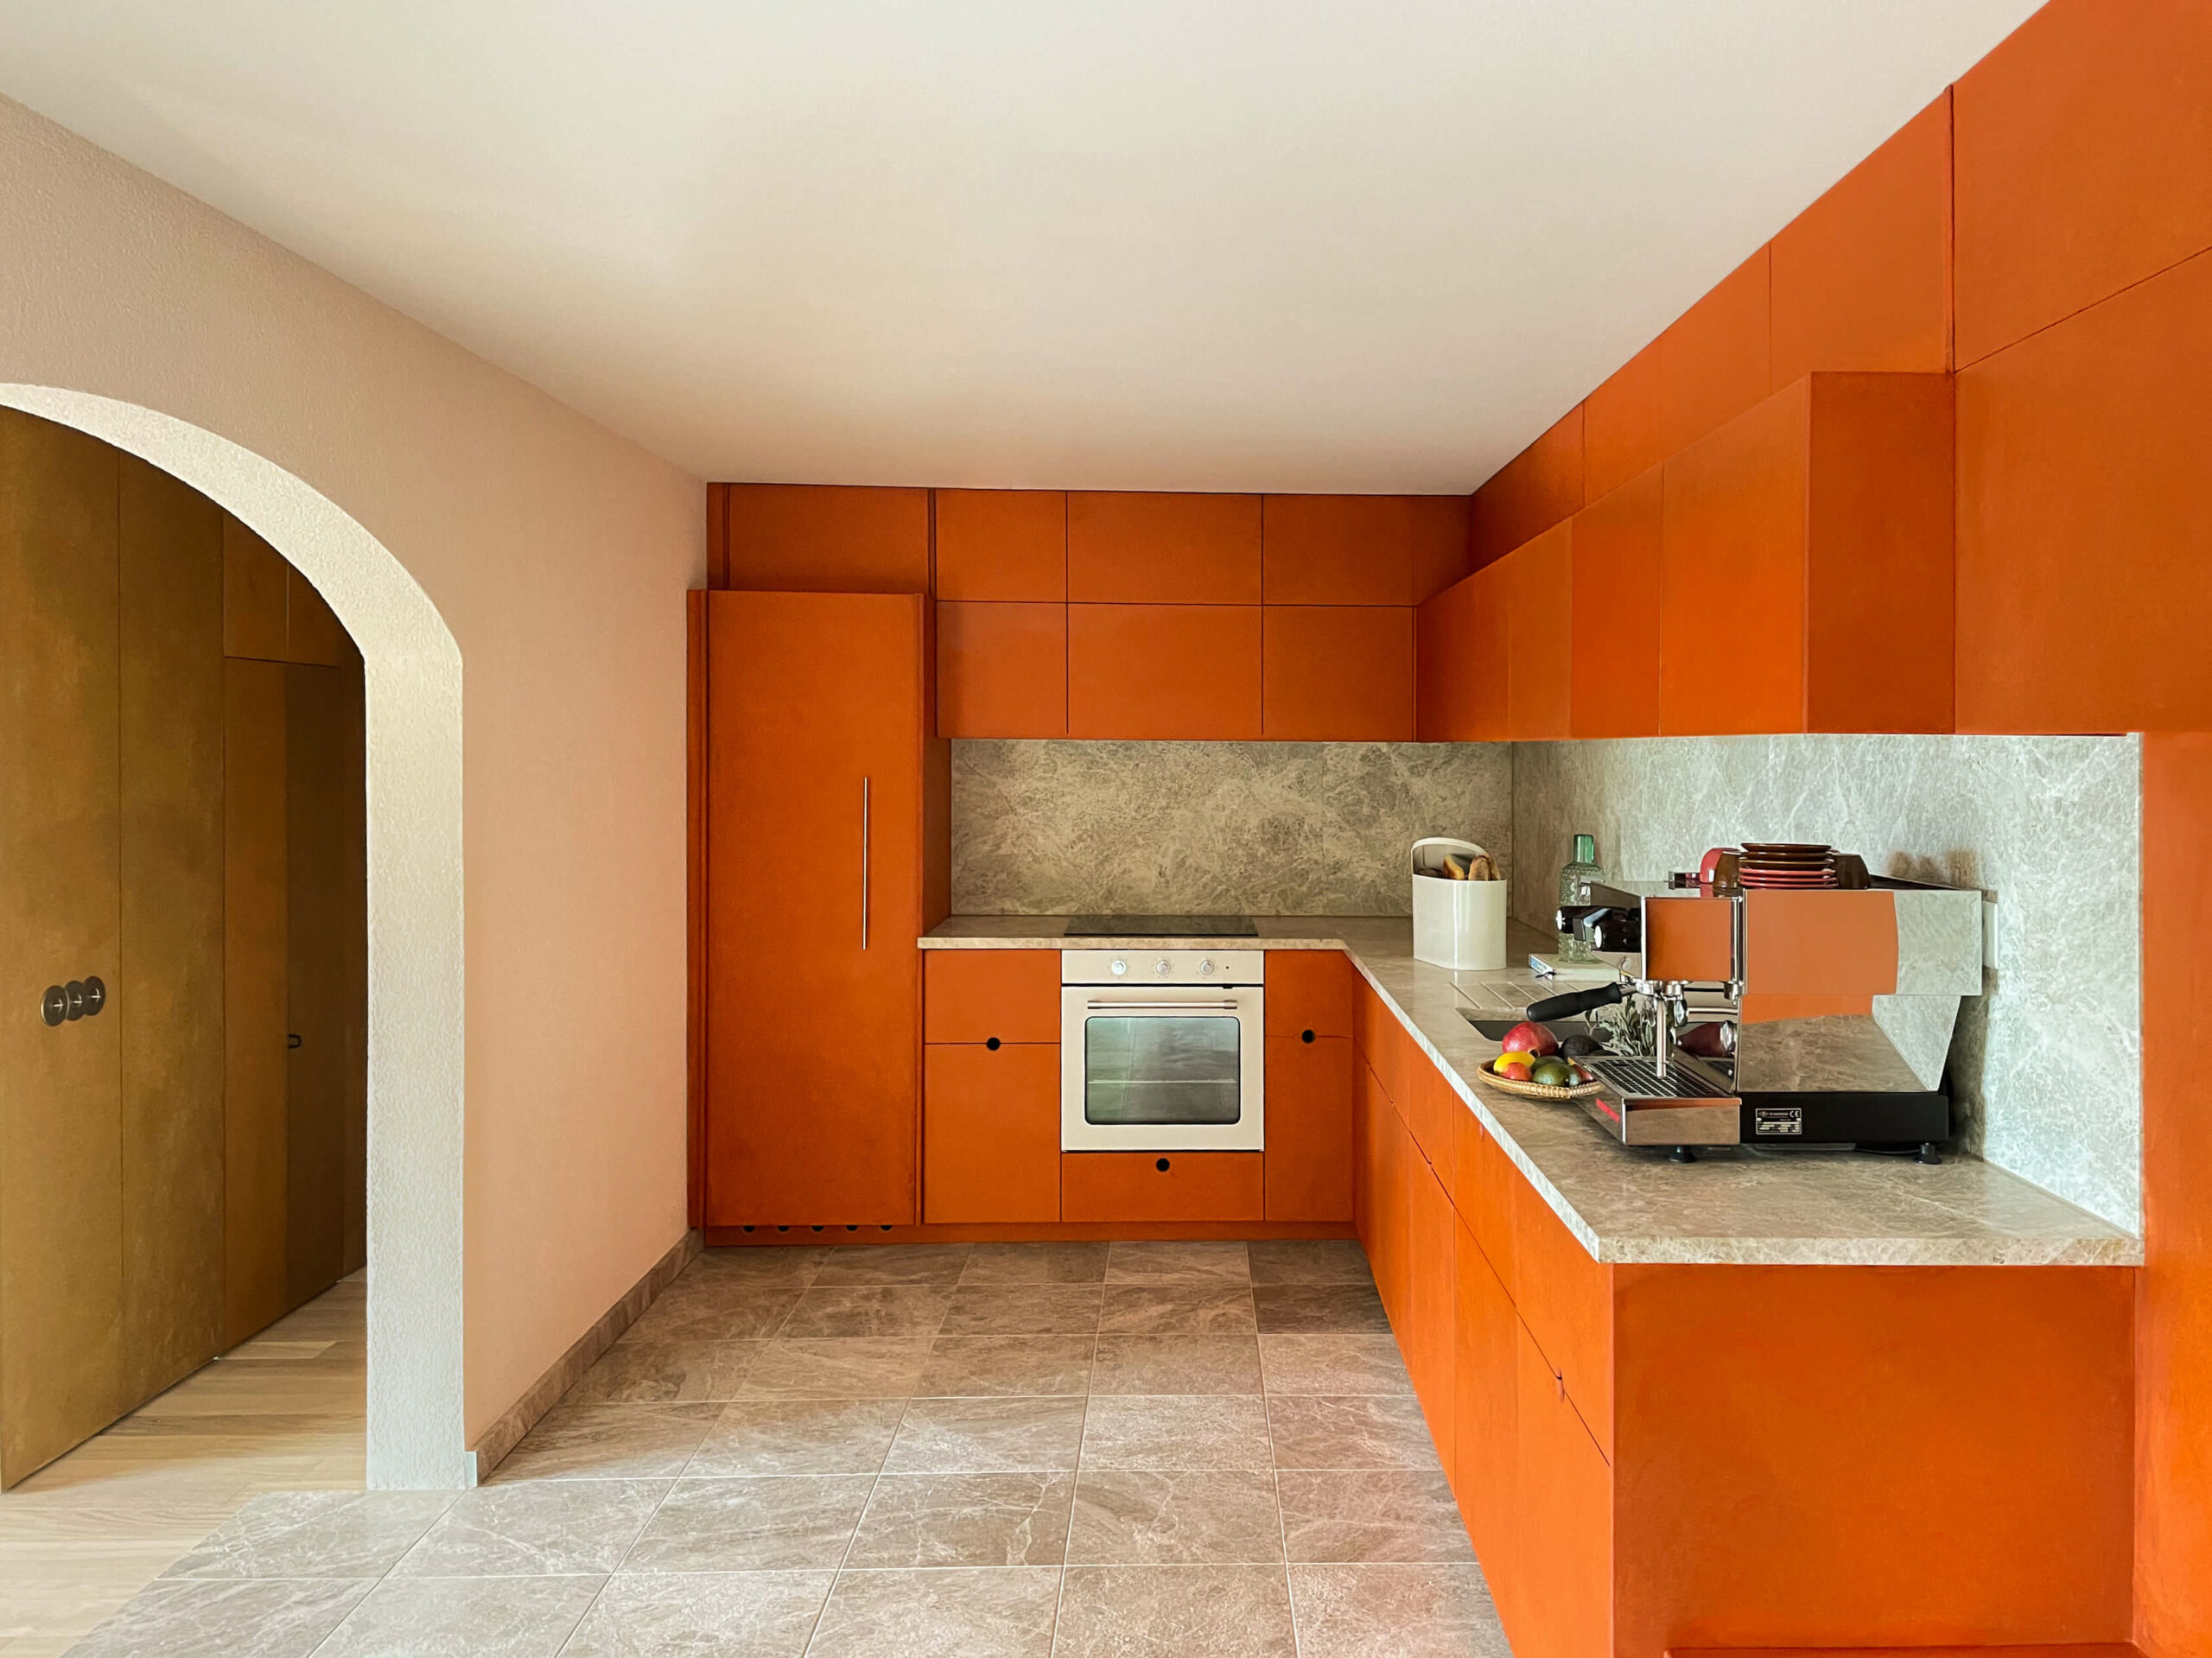 kitchen-orange-mdf-interrior-architecture-apartement